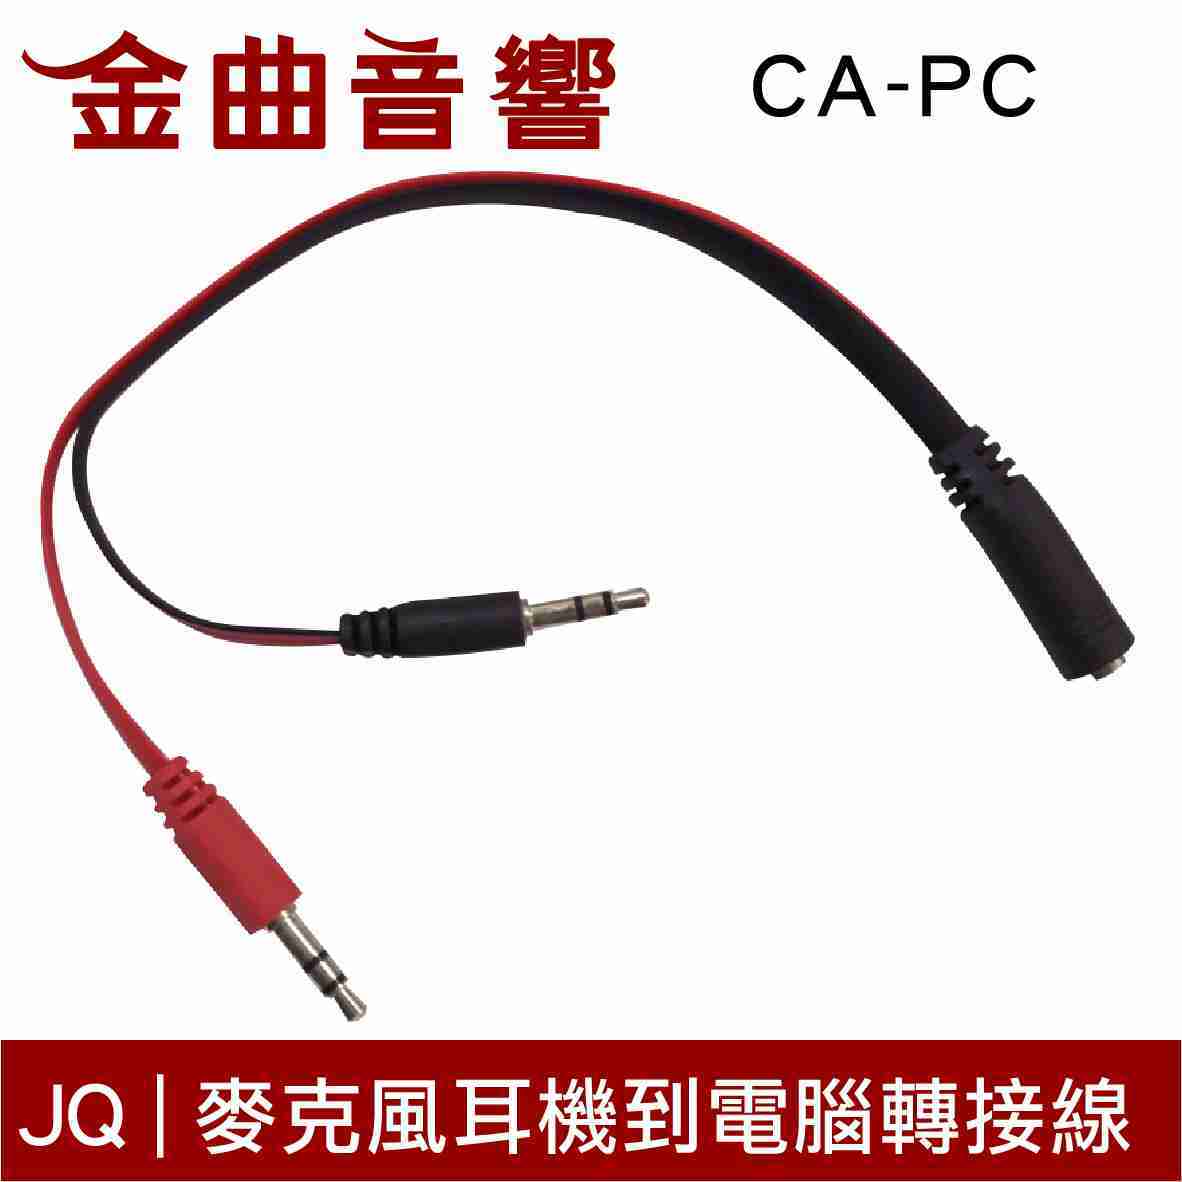 JQ CA-PC 麥克風 耳機 到 PC 電腦 接口 Apple Android 轉接線 | 金曲音響